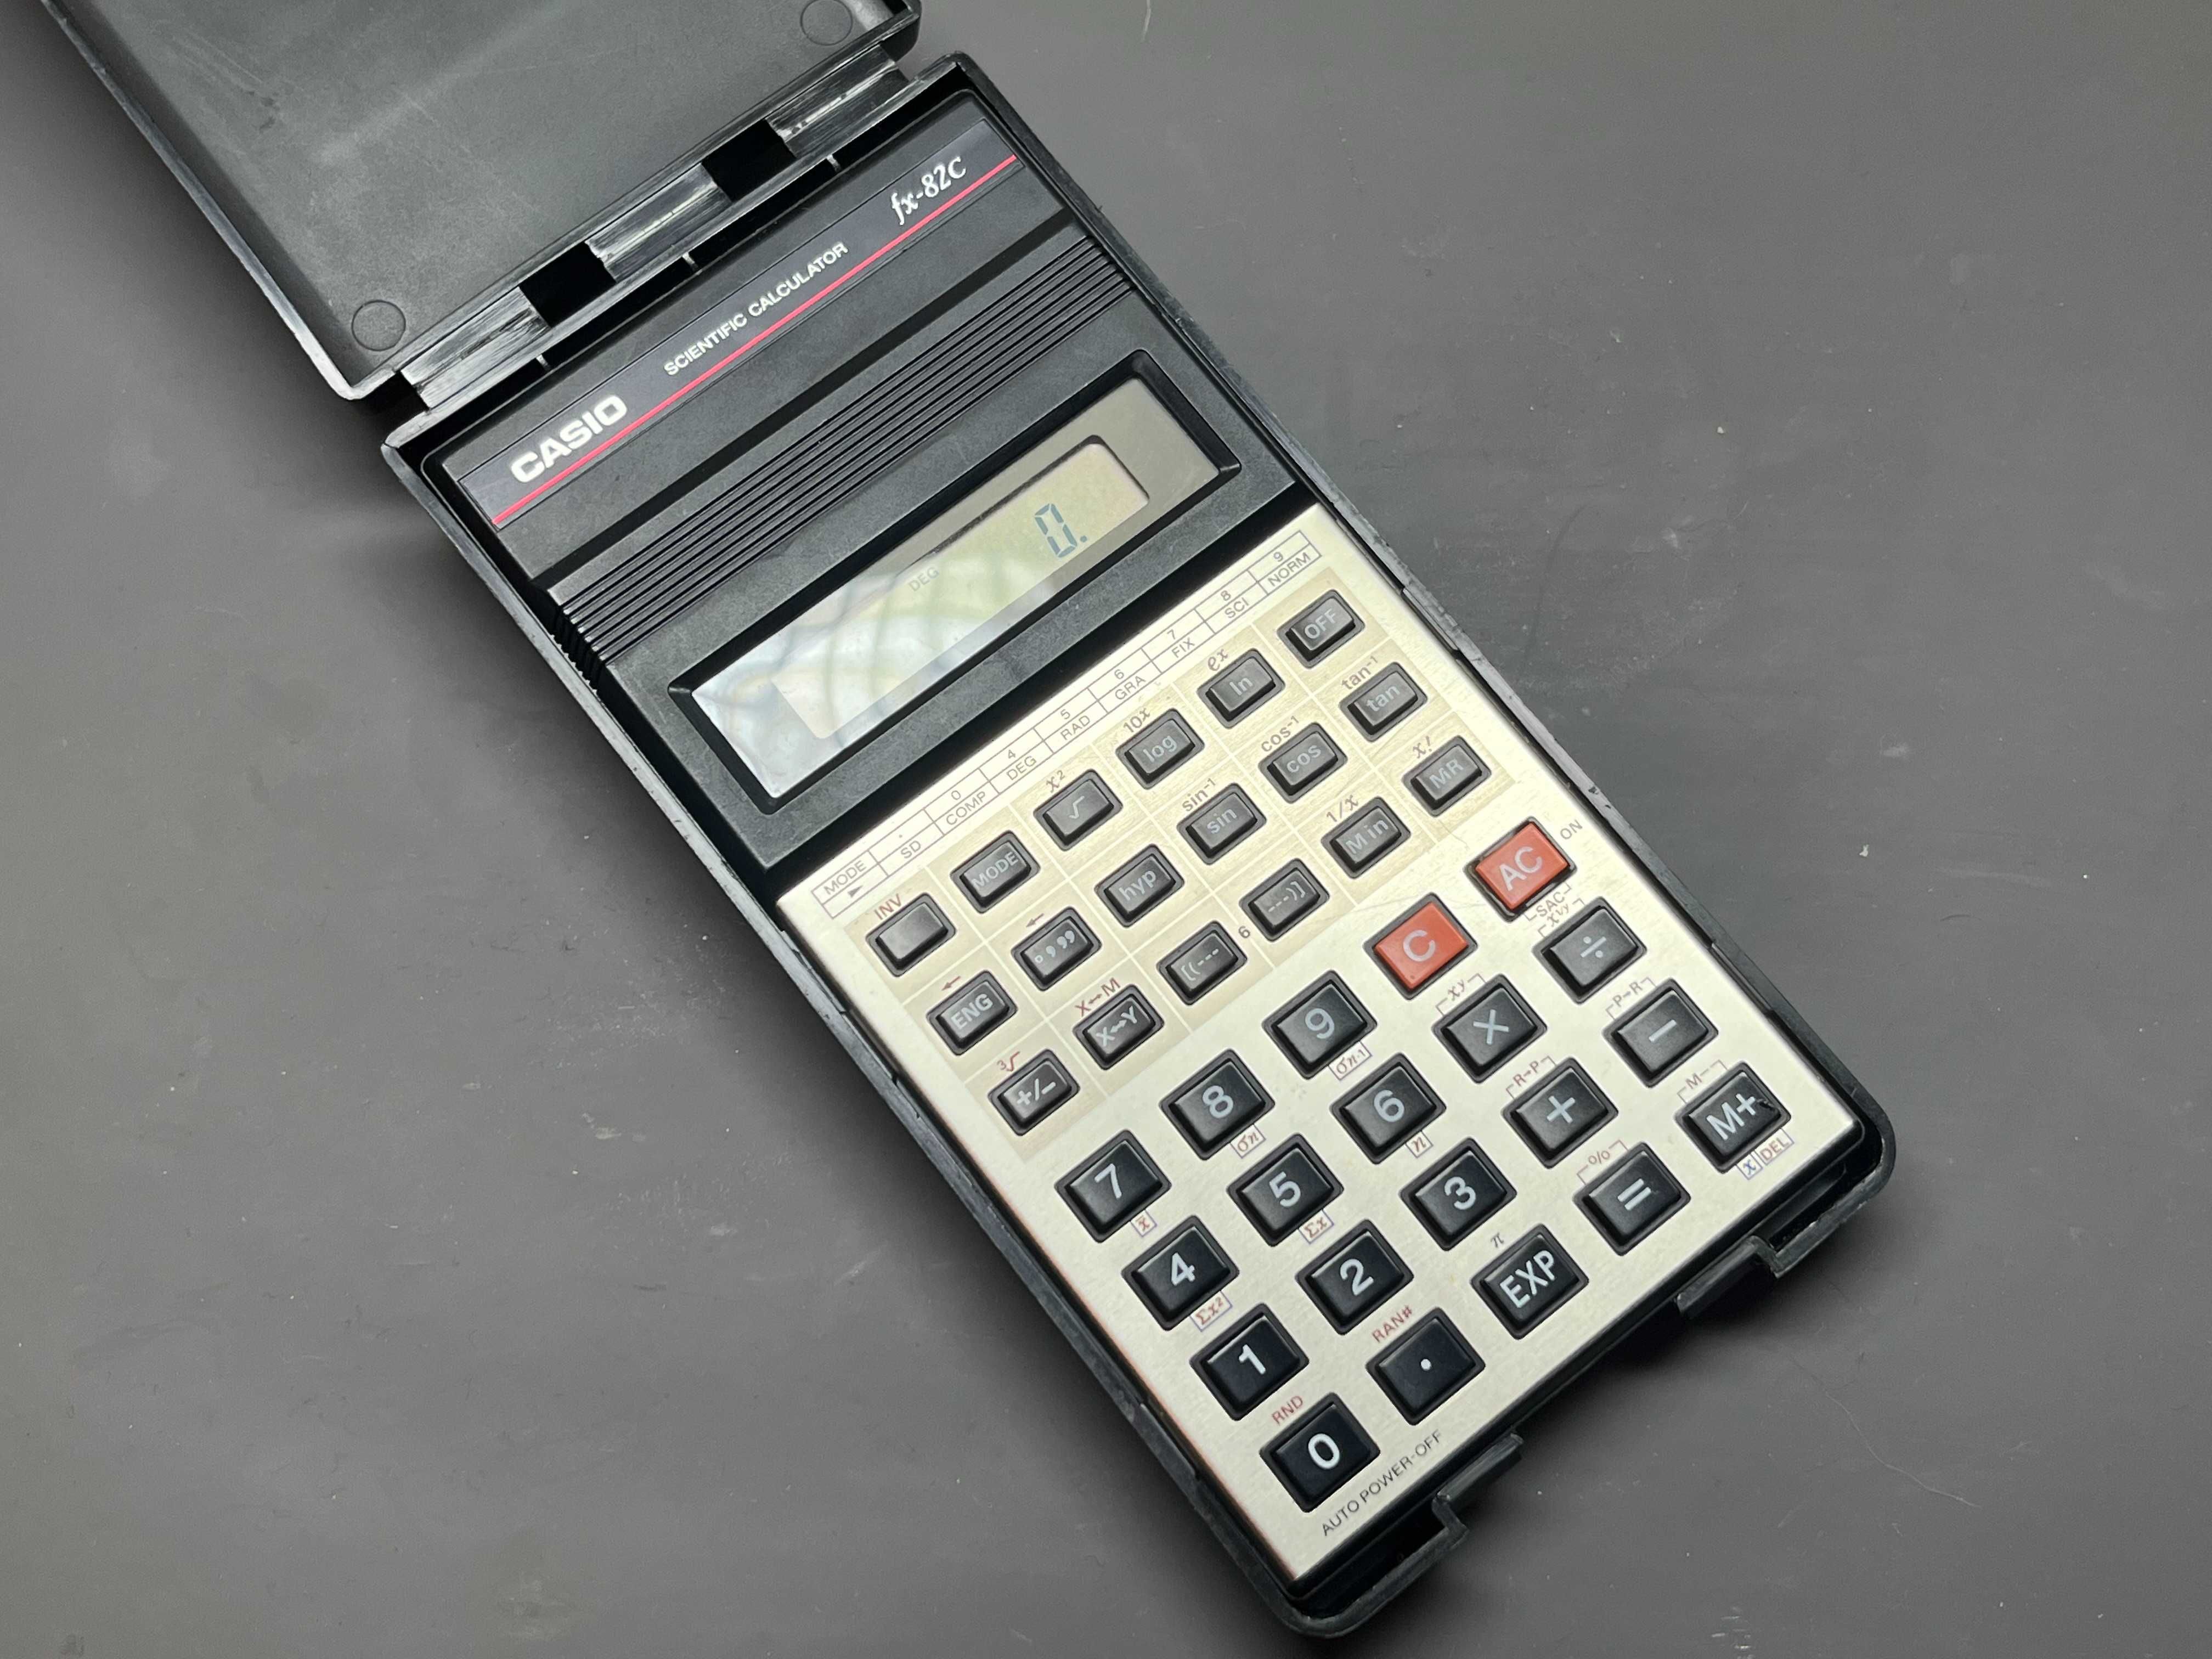 Stary kalkulator naukowy Casio FX-82c